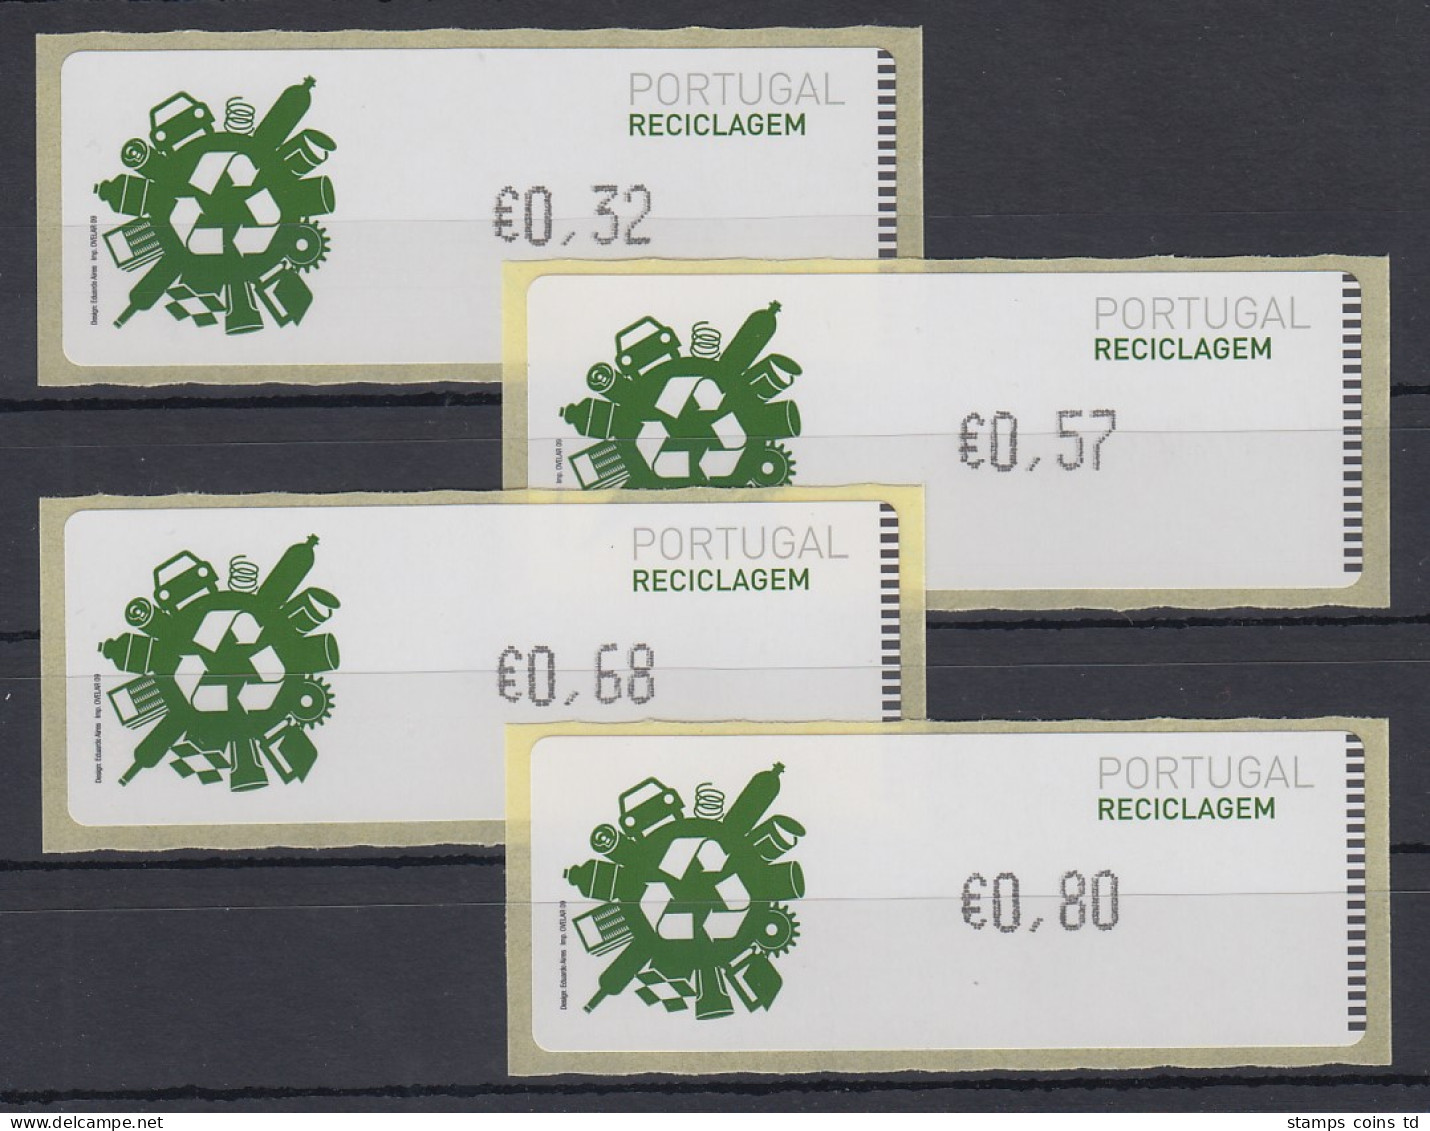 Portugal 2009 ATM Recycling Monétel Mi.-Nr. 67 Satz 32-57-68-80 **  - Vignette [ATM]